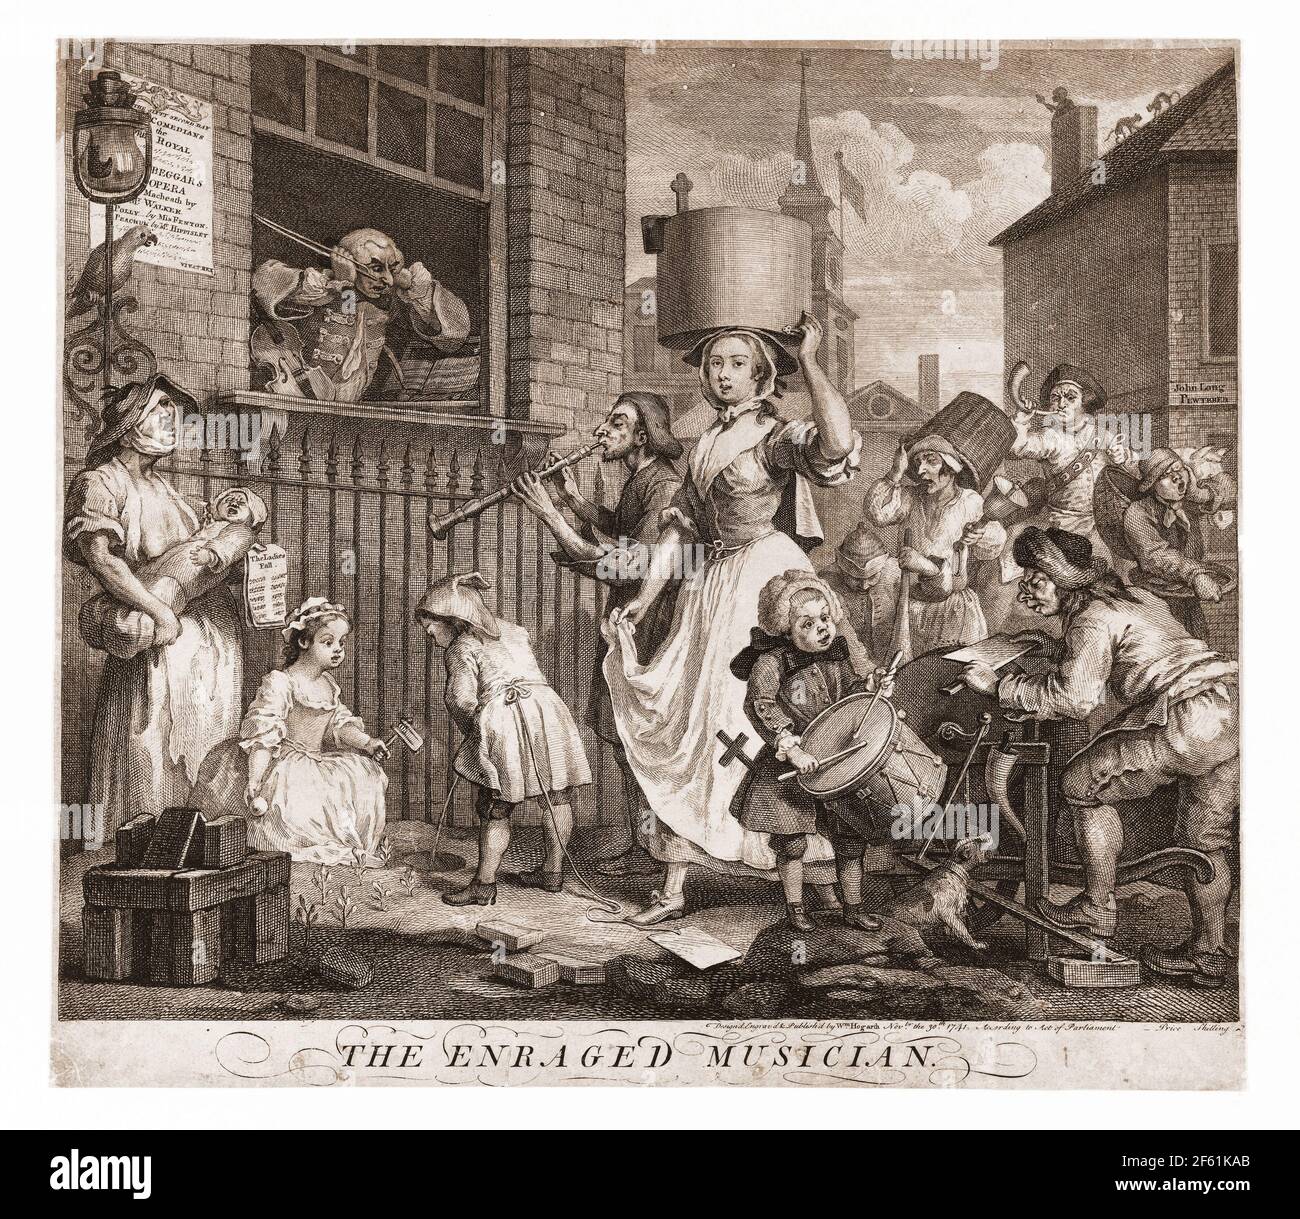 Il musiciano infuriato, 1741, Hogarth Foto Stock